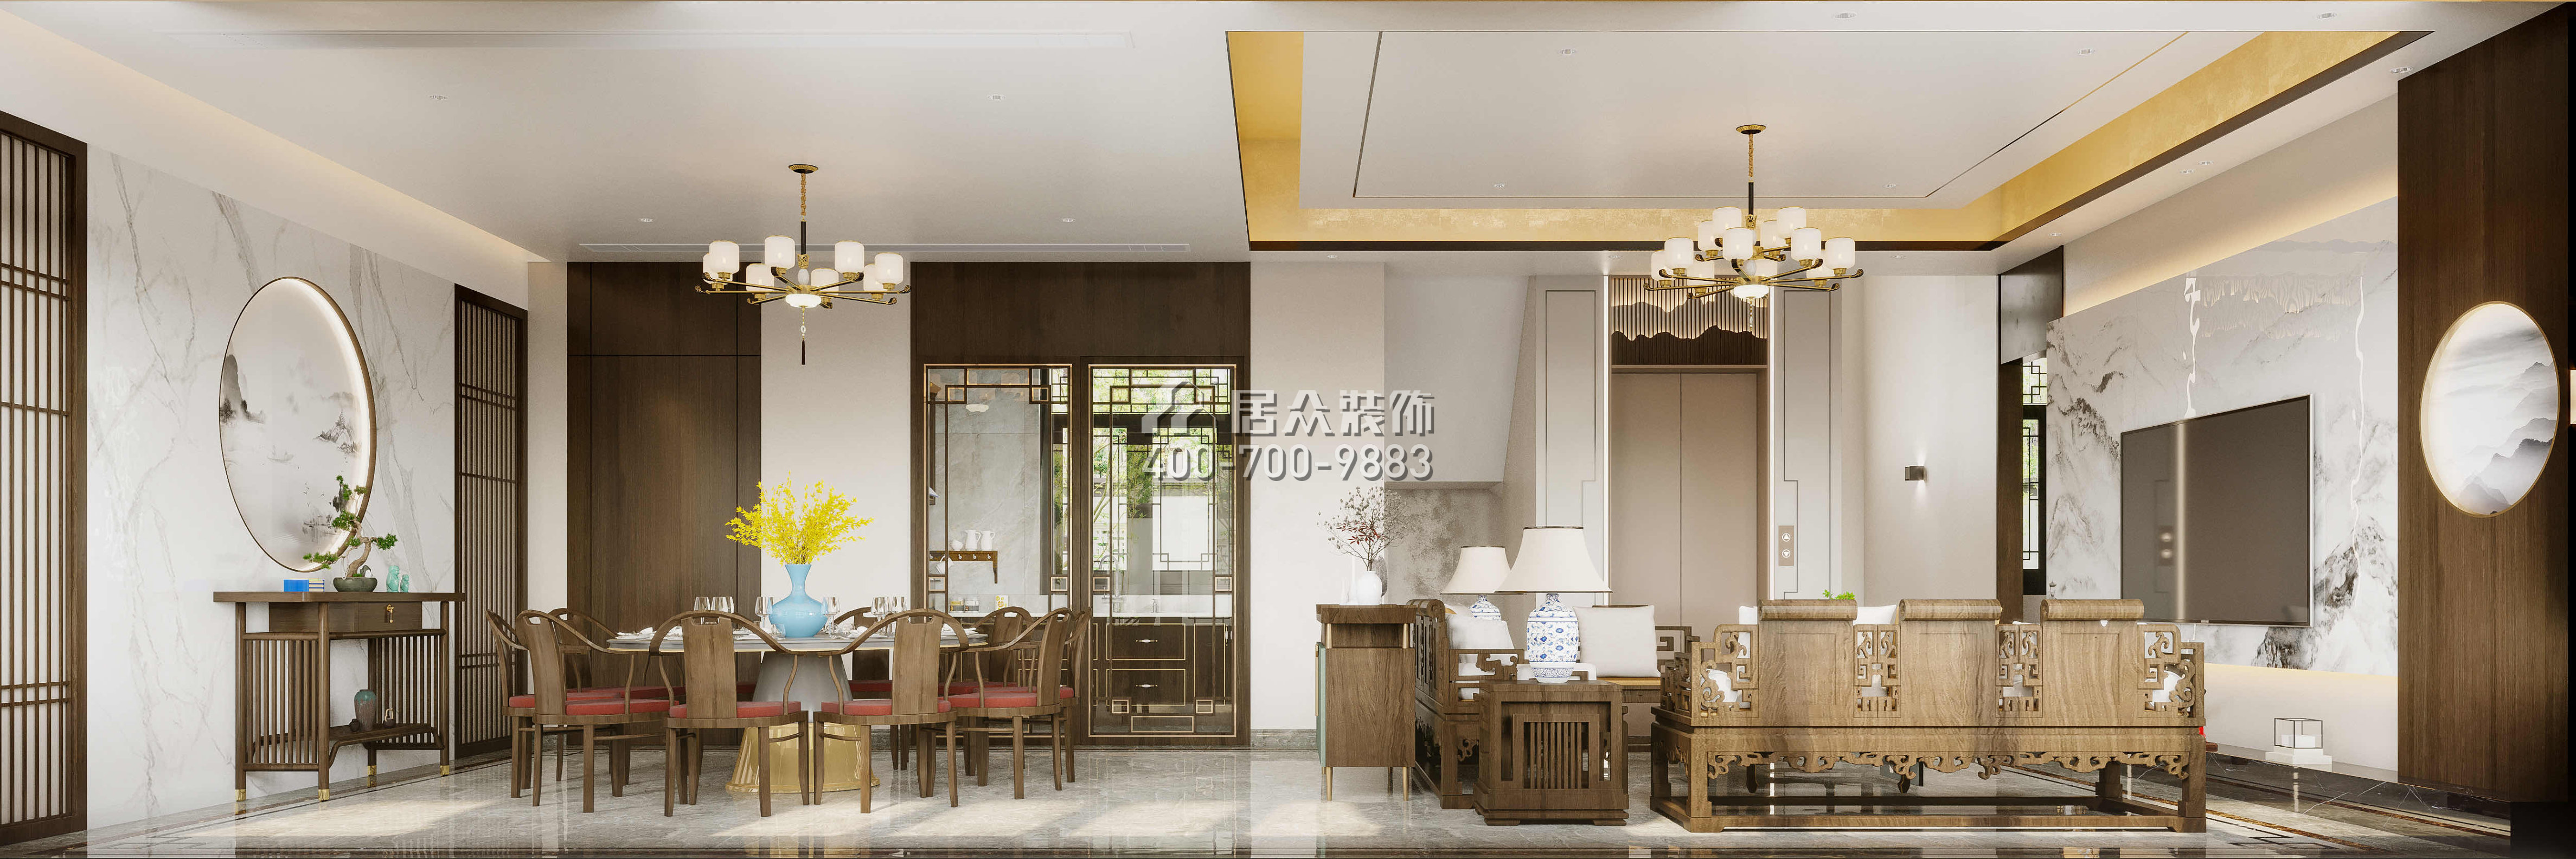 翠湖香山桃花源480平方米中式風格別墅戶型客餐廳一體裝修效果圖